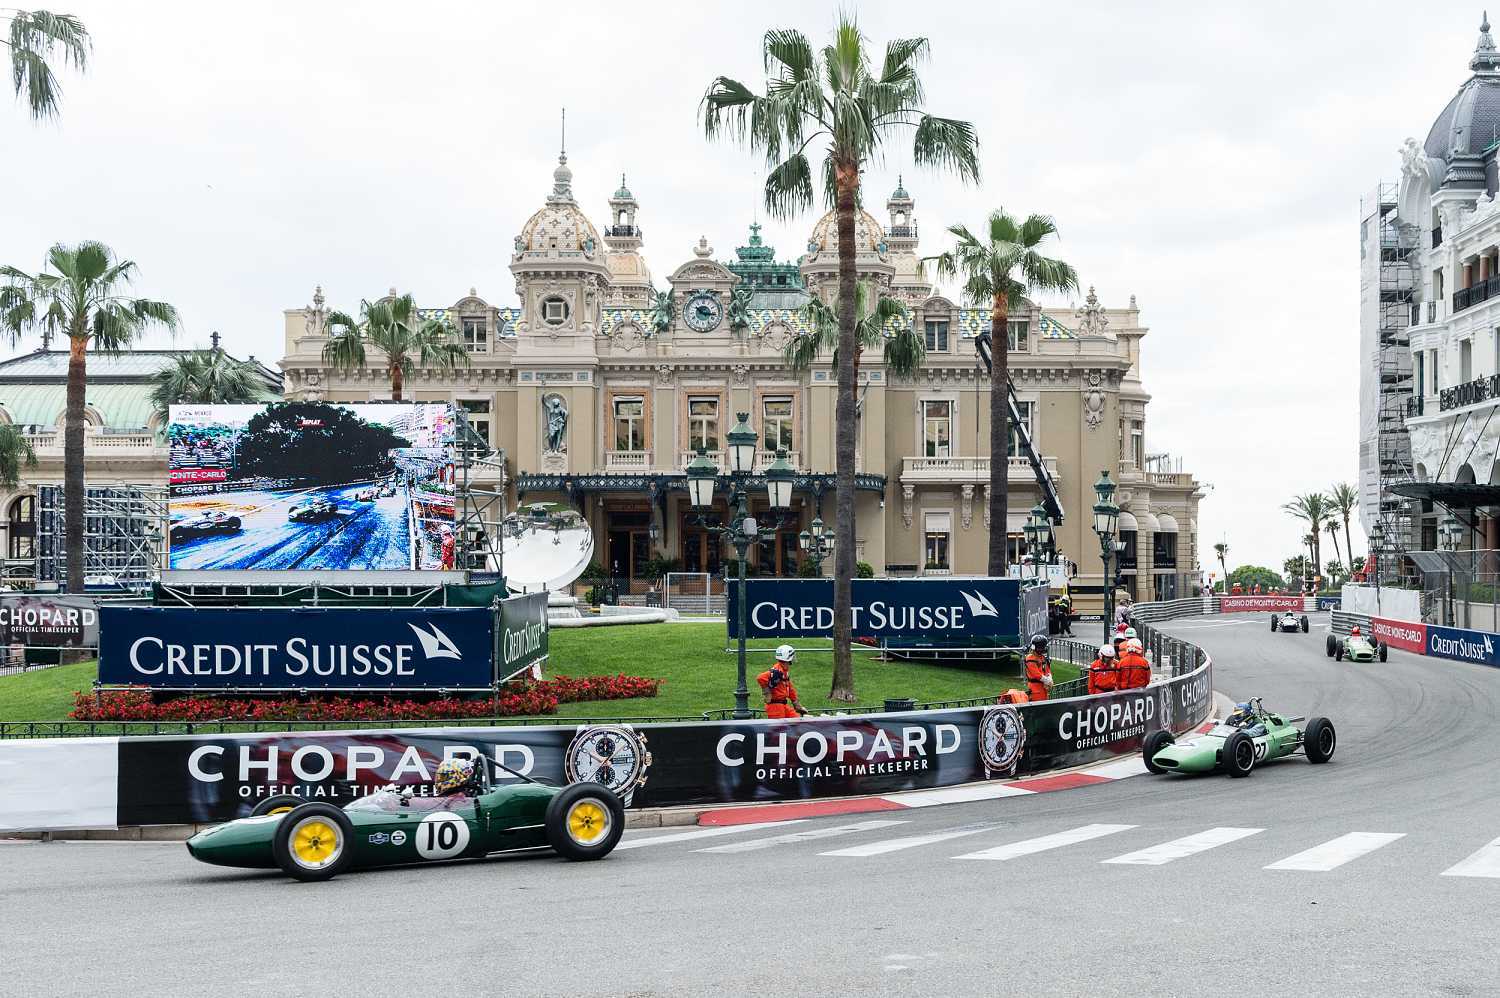 Chopard oficiální časomíra Grand Prix de Monaco 1 | Chopard & Porsche 11